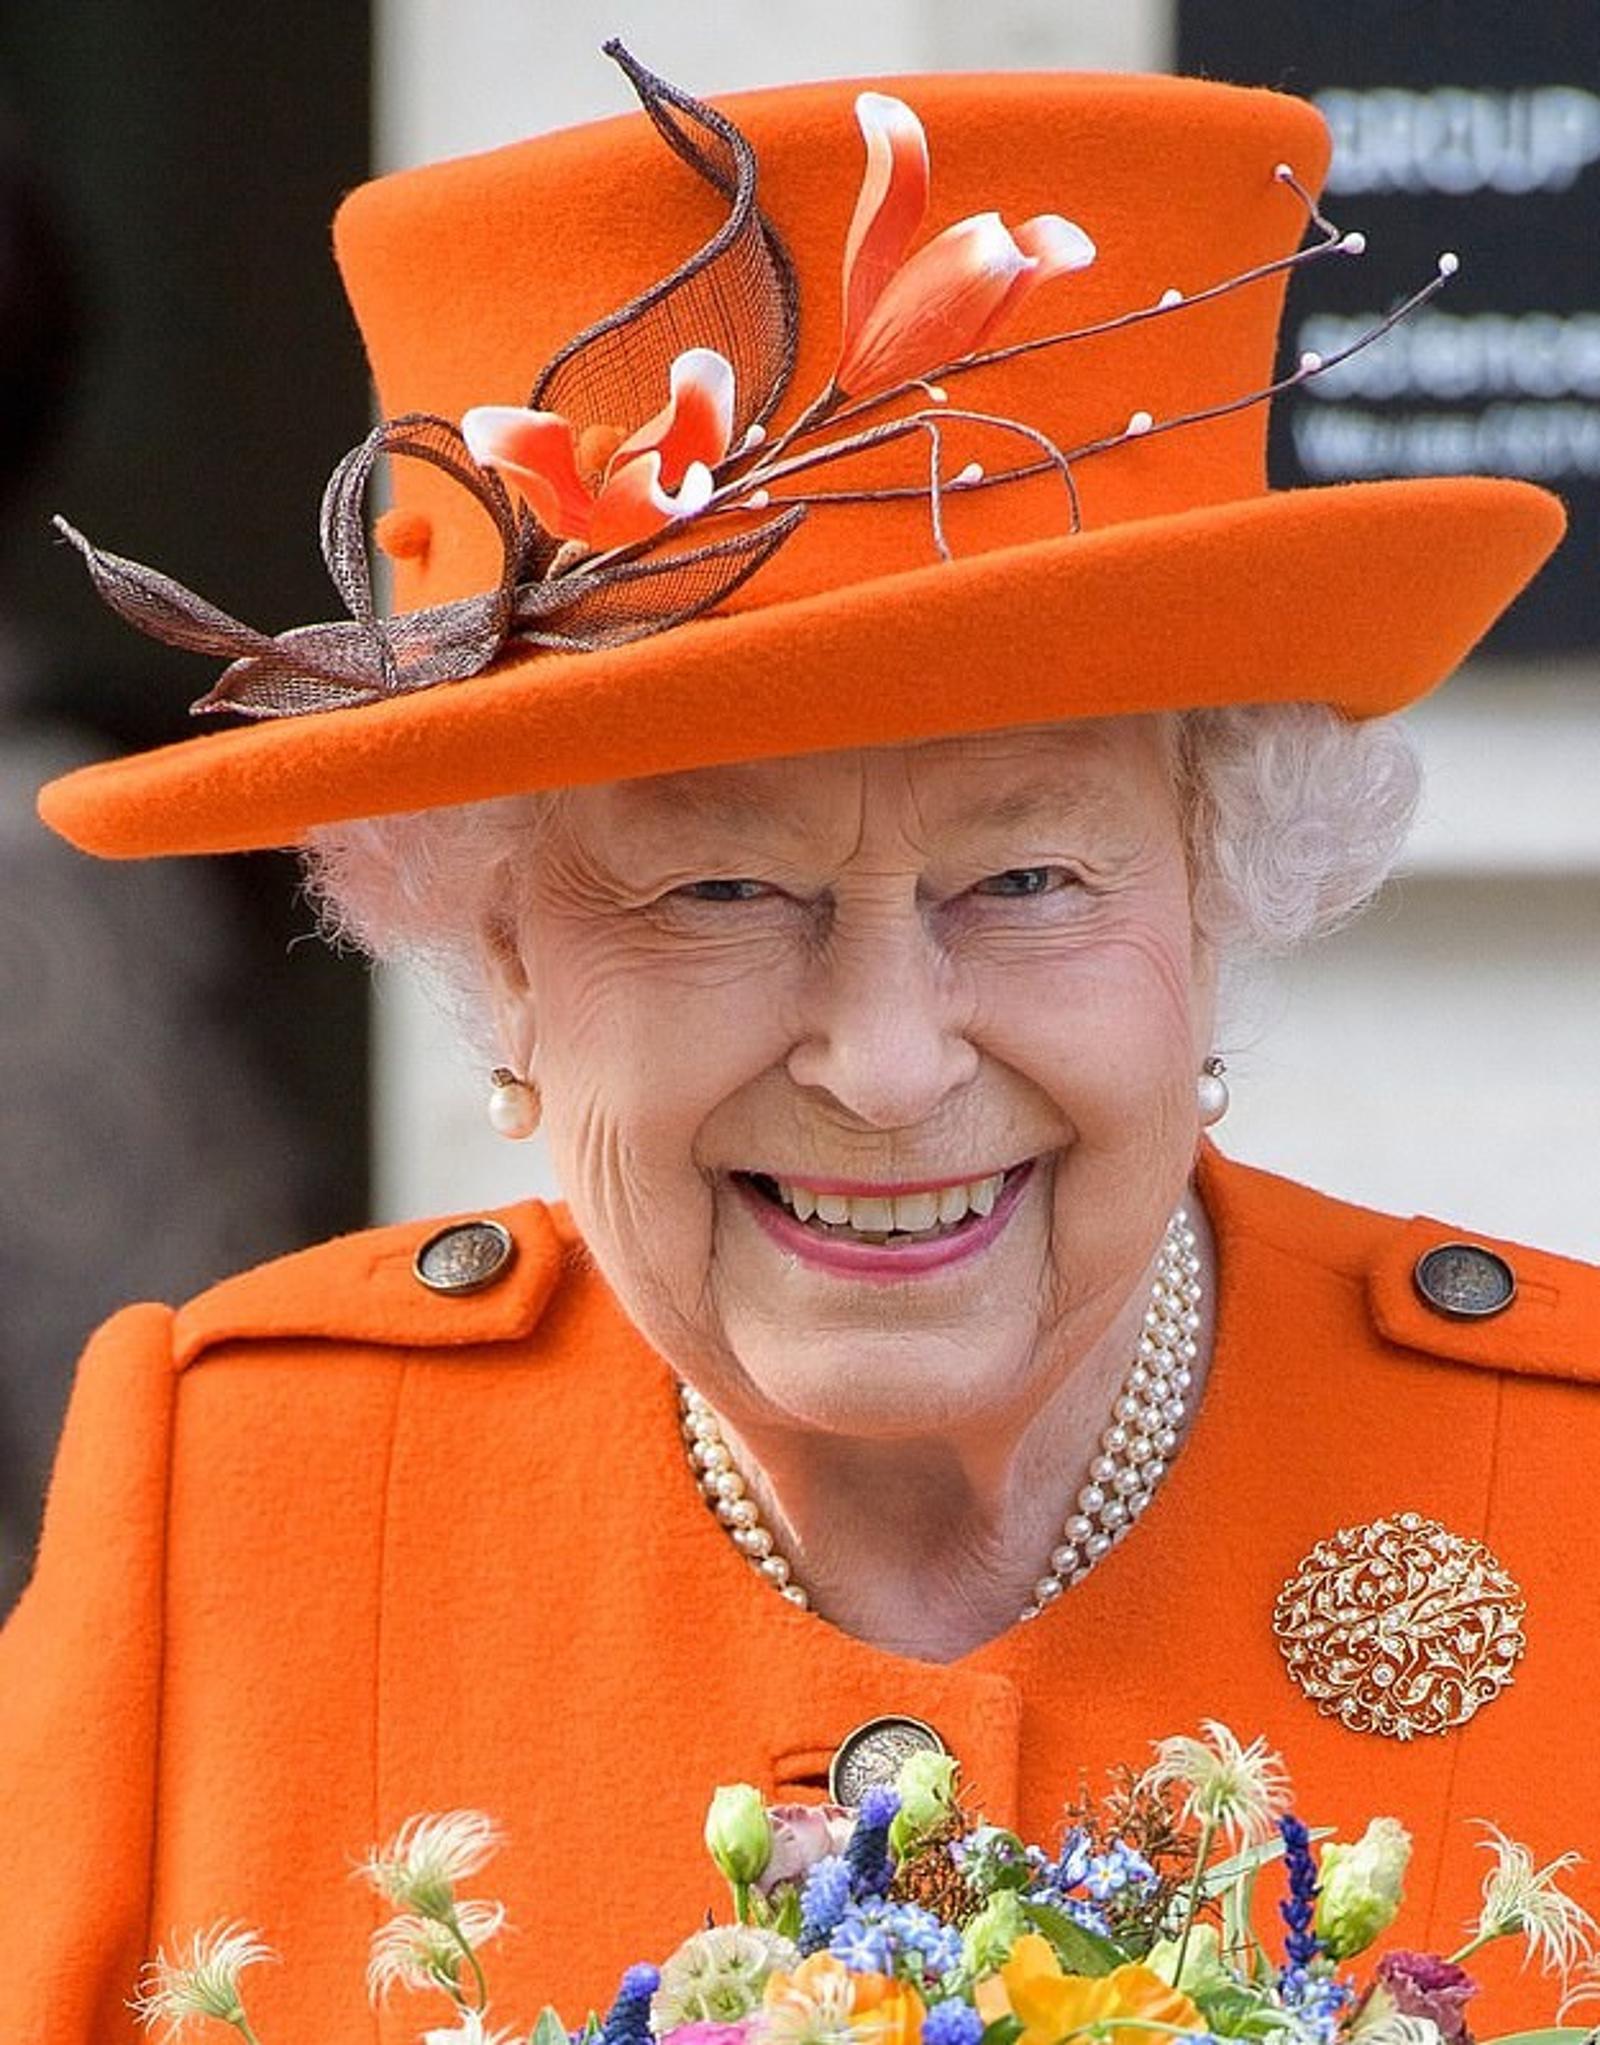 Фотограф назвал три лучших снимка британской королевской семьи в 2019 году